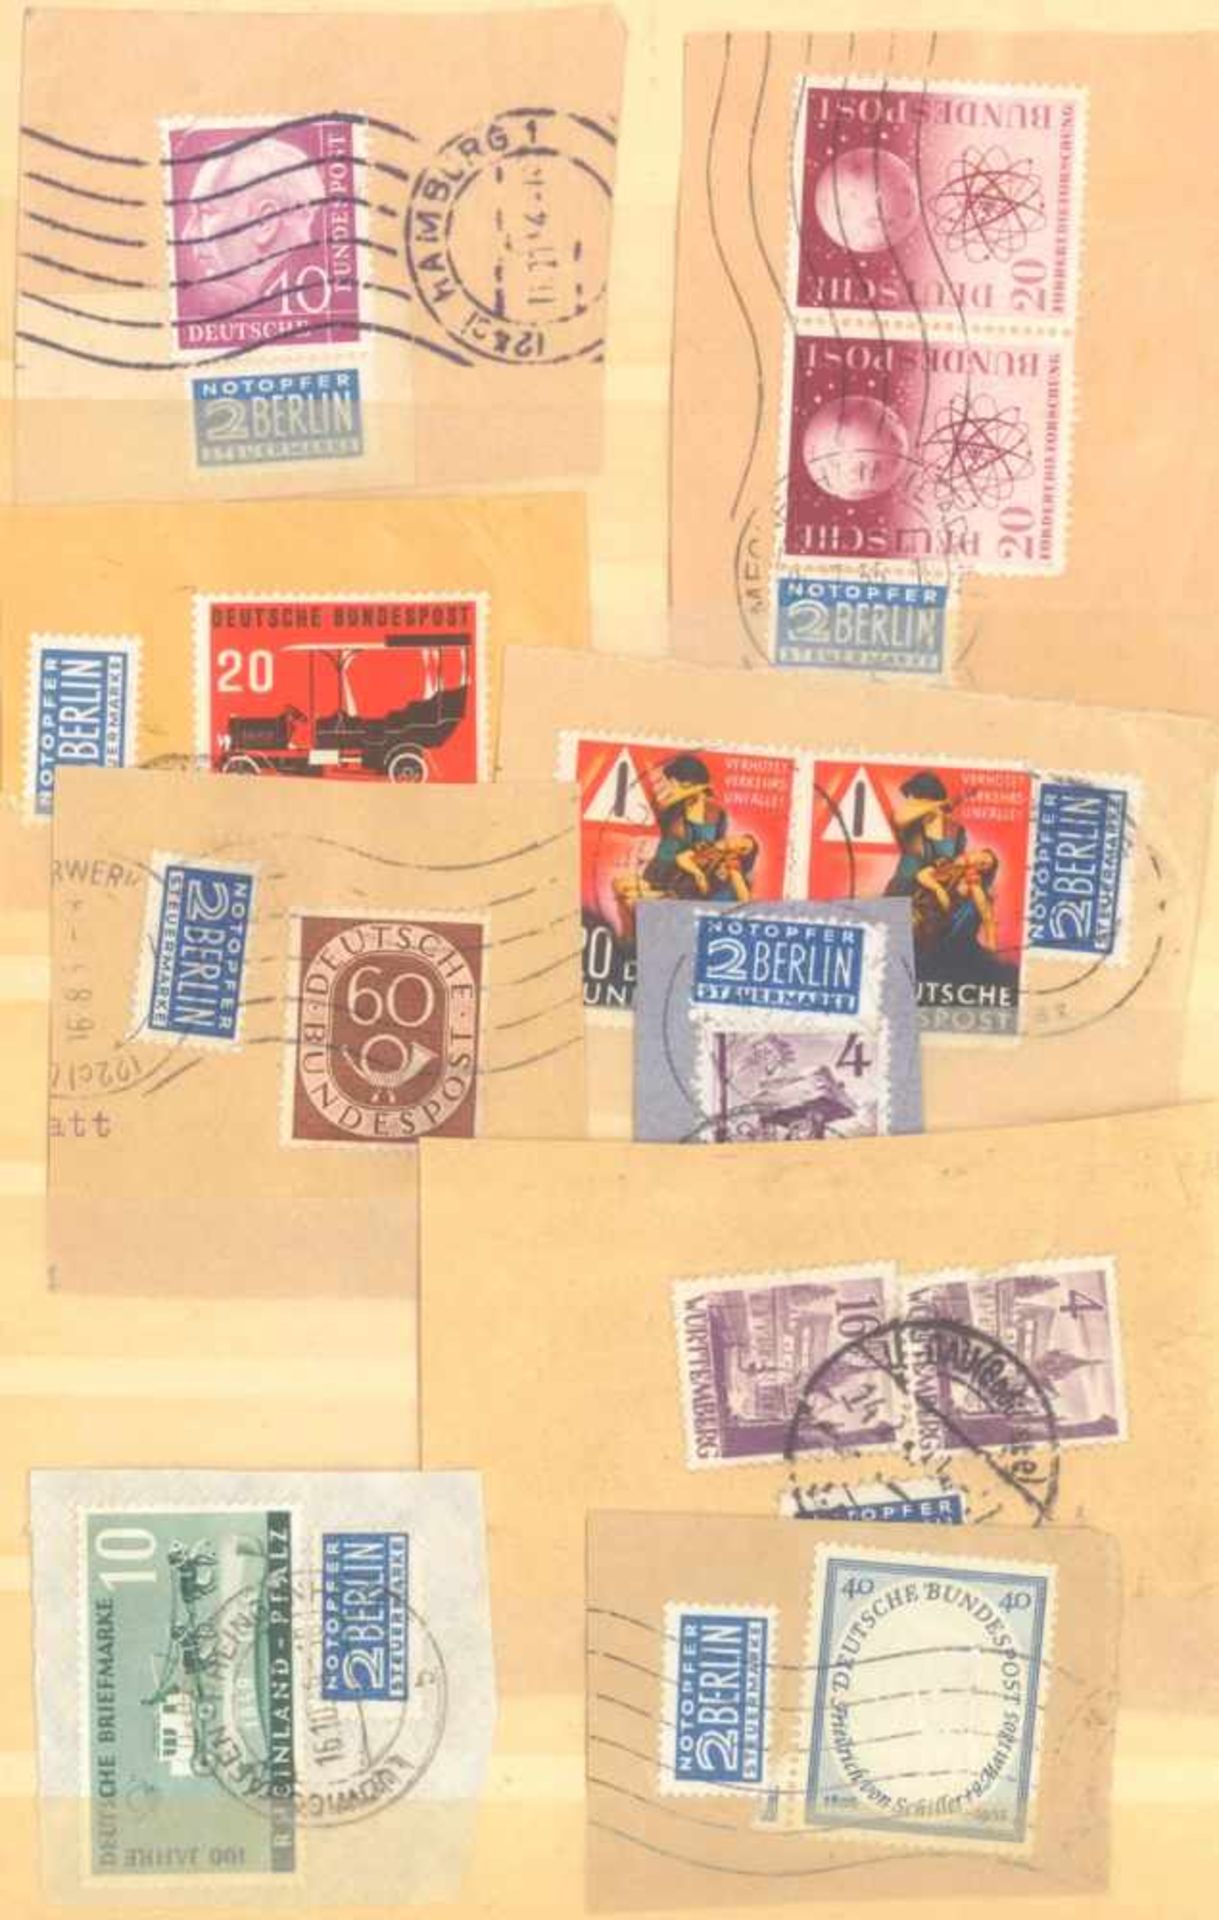 FRANKENTHALER NACHLASSuriger Nachlass mit Briefmarken und Belegen. Dabei DeutschesReich, altes - Image 30 of 46